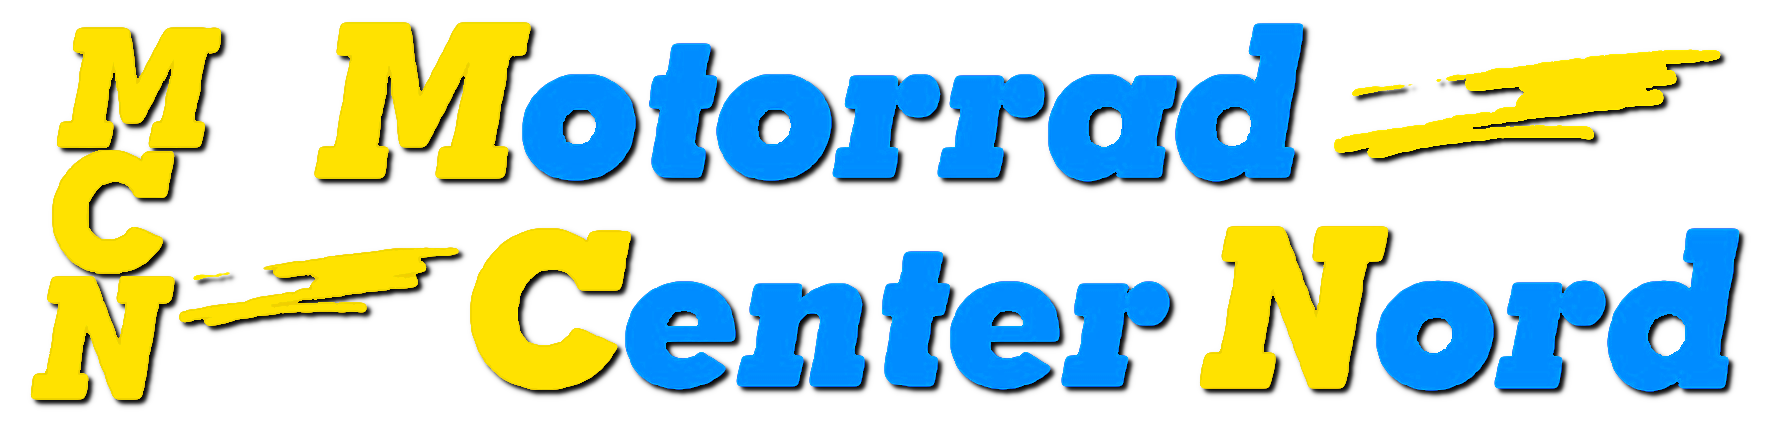 Motorrad Center Nord Logo